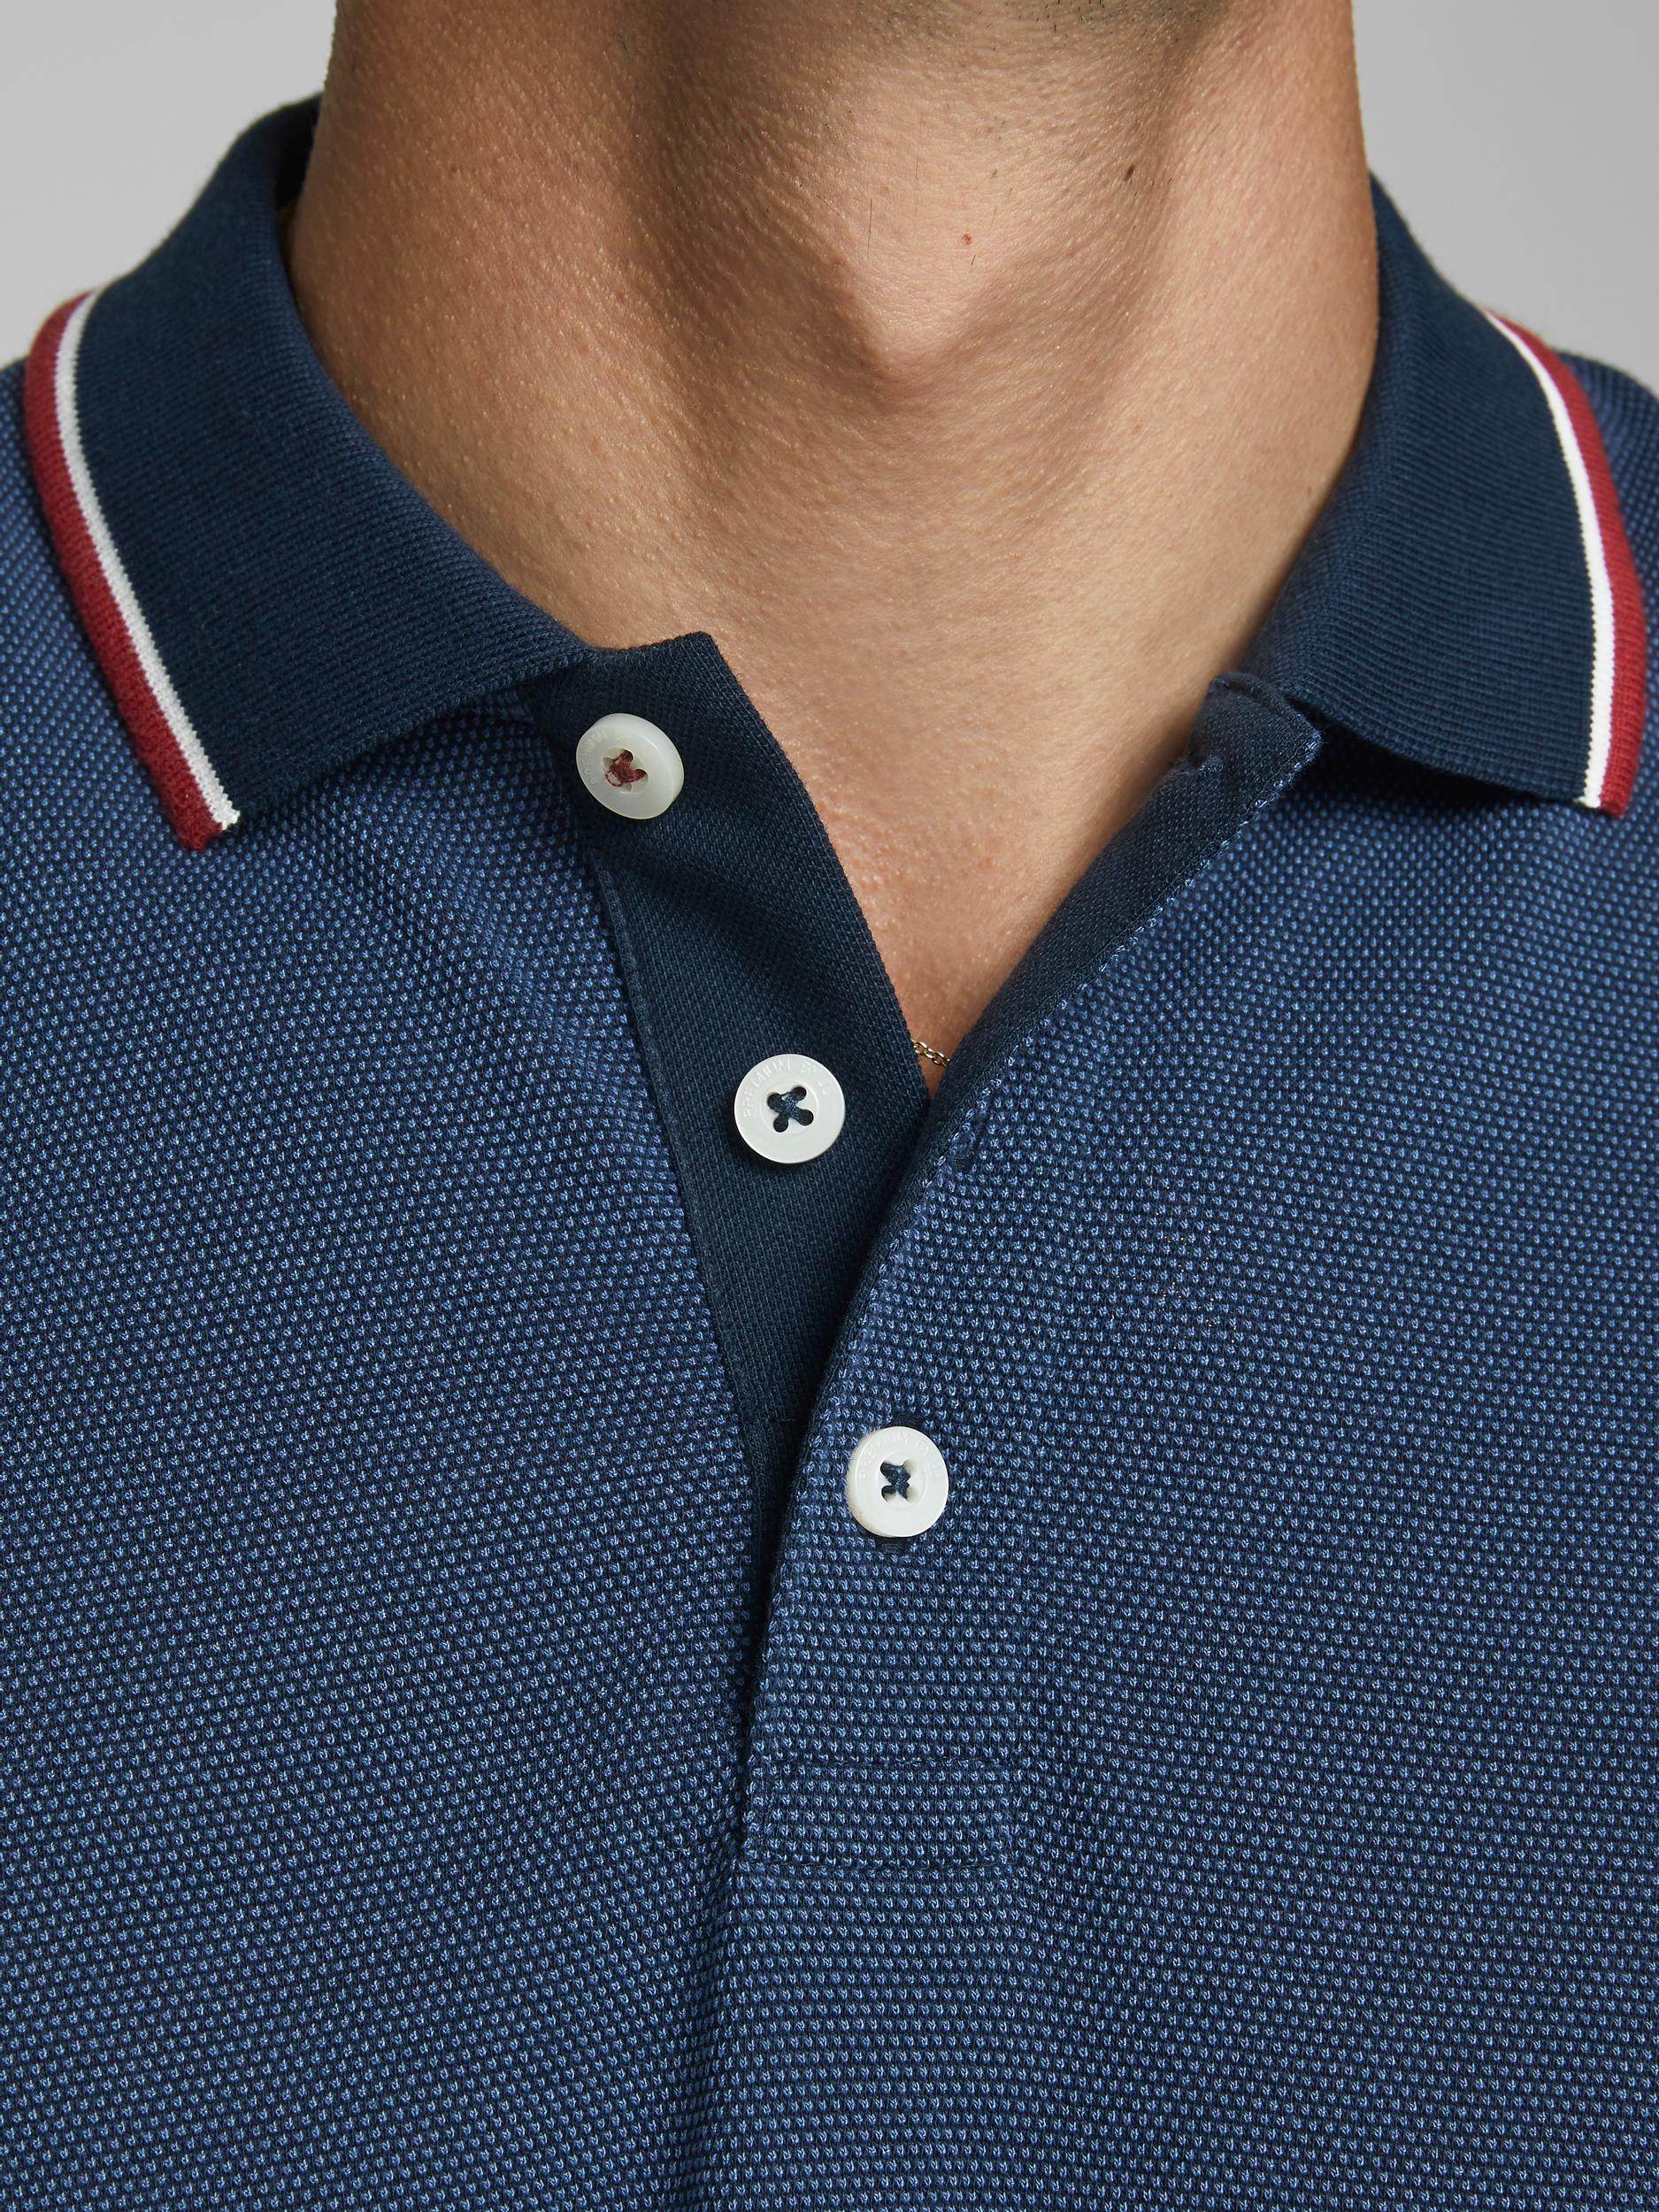 Men's Win Polo Long Sleeve-Navy Blazer-Button View